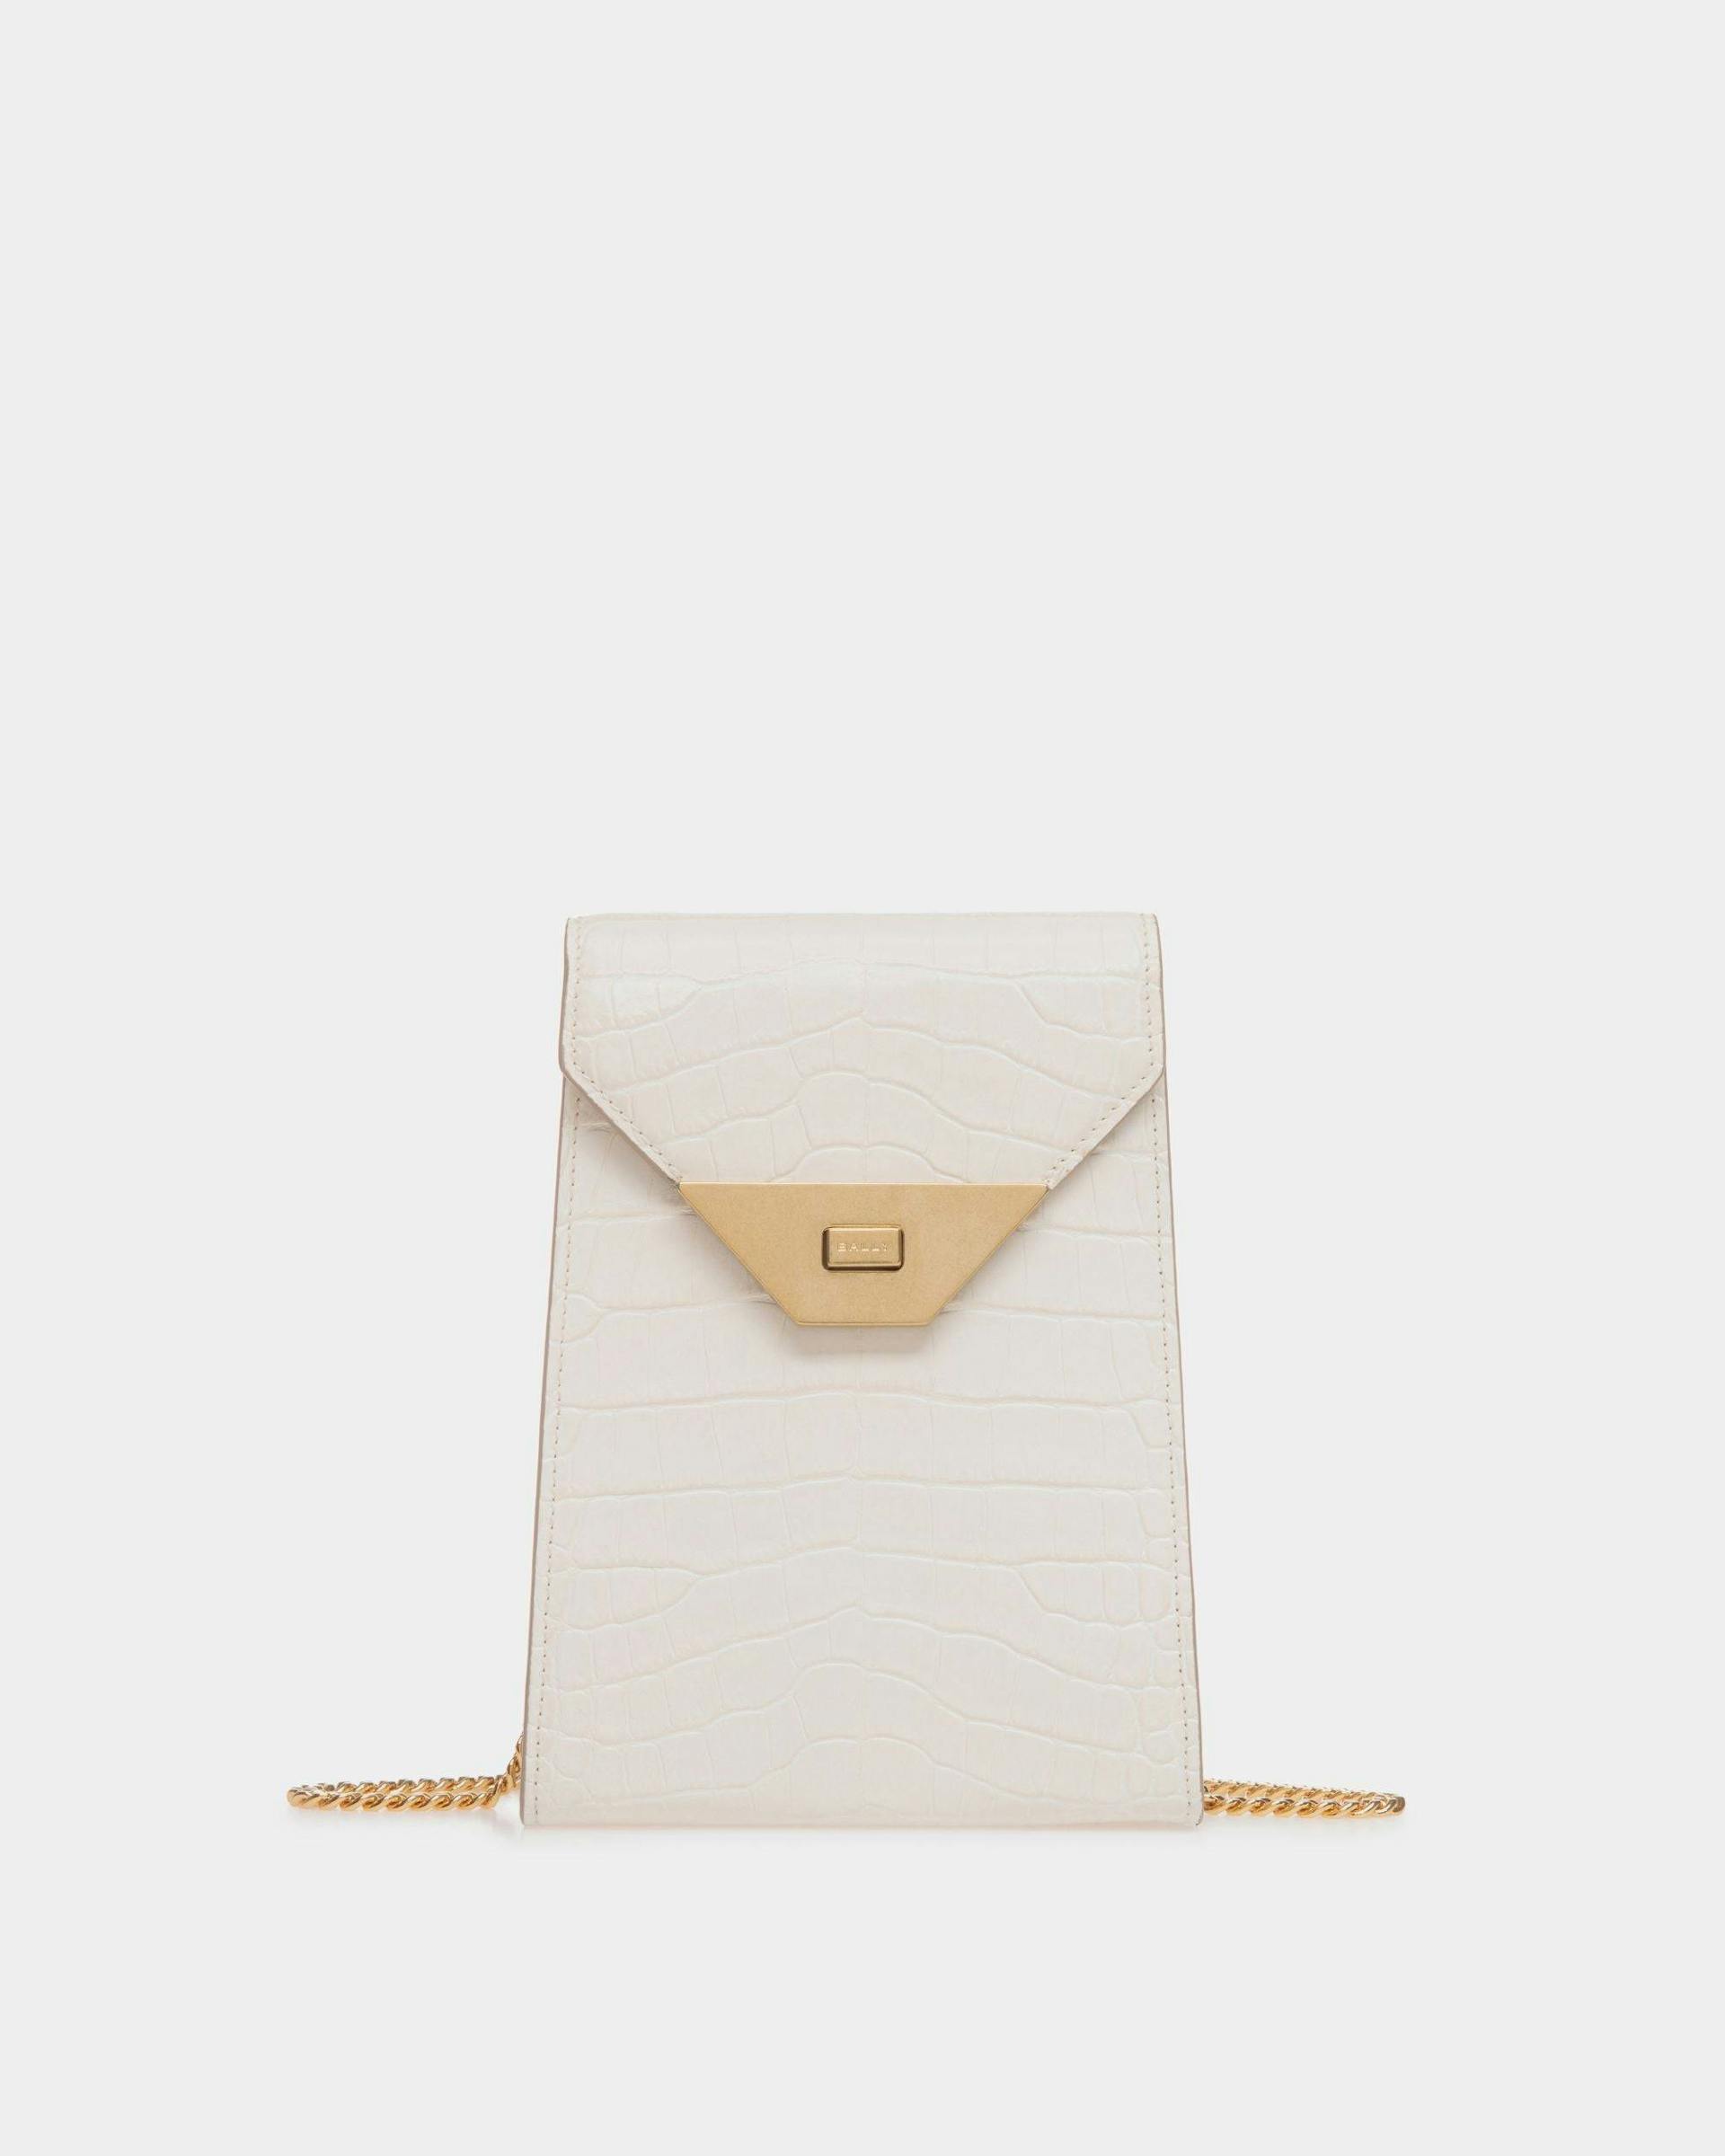 Women's Tilt Phone Bag in White Crocodile Print Leather | Bally | Still Life Front